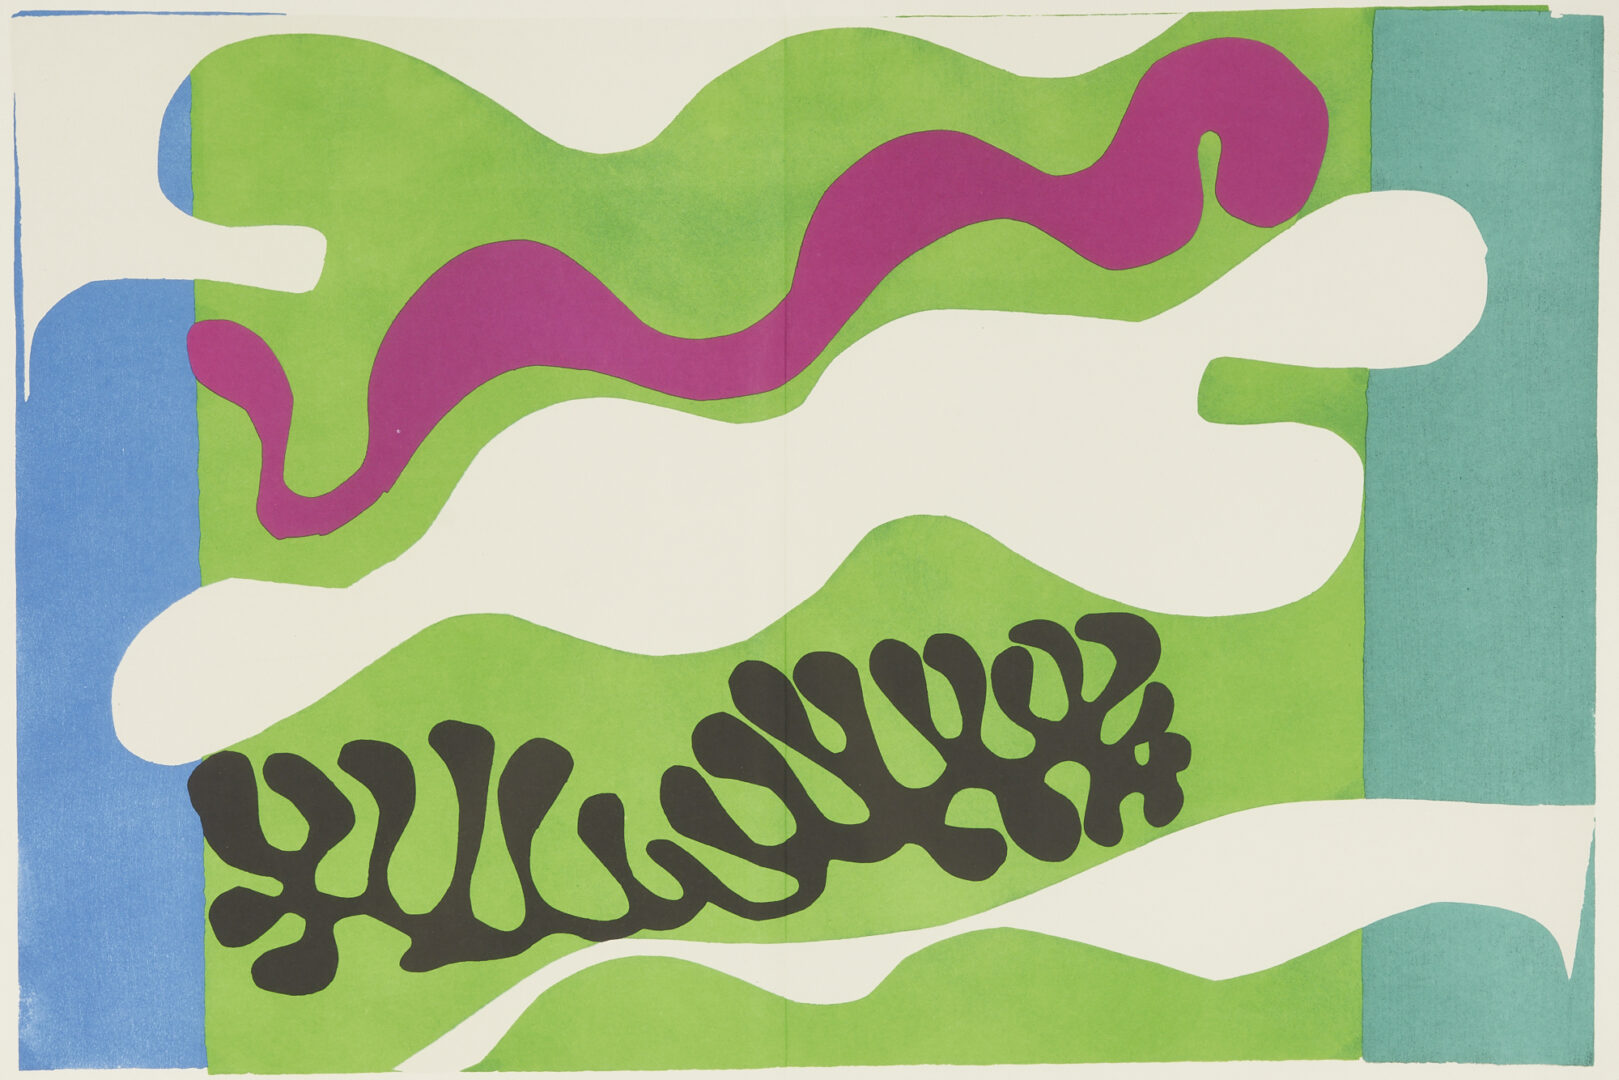 Lot 445: Matisse Jazz Series Portfolio, 20 Framed Color Plates